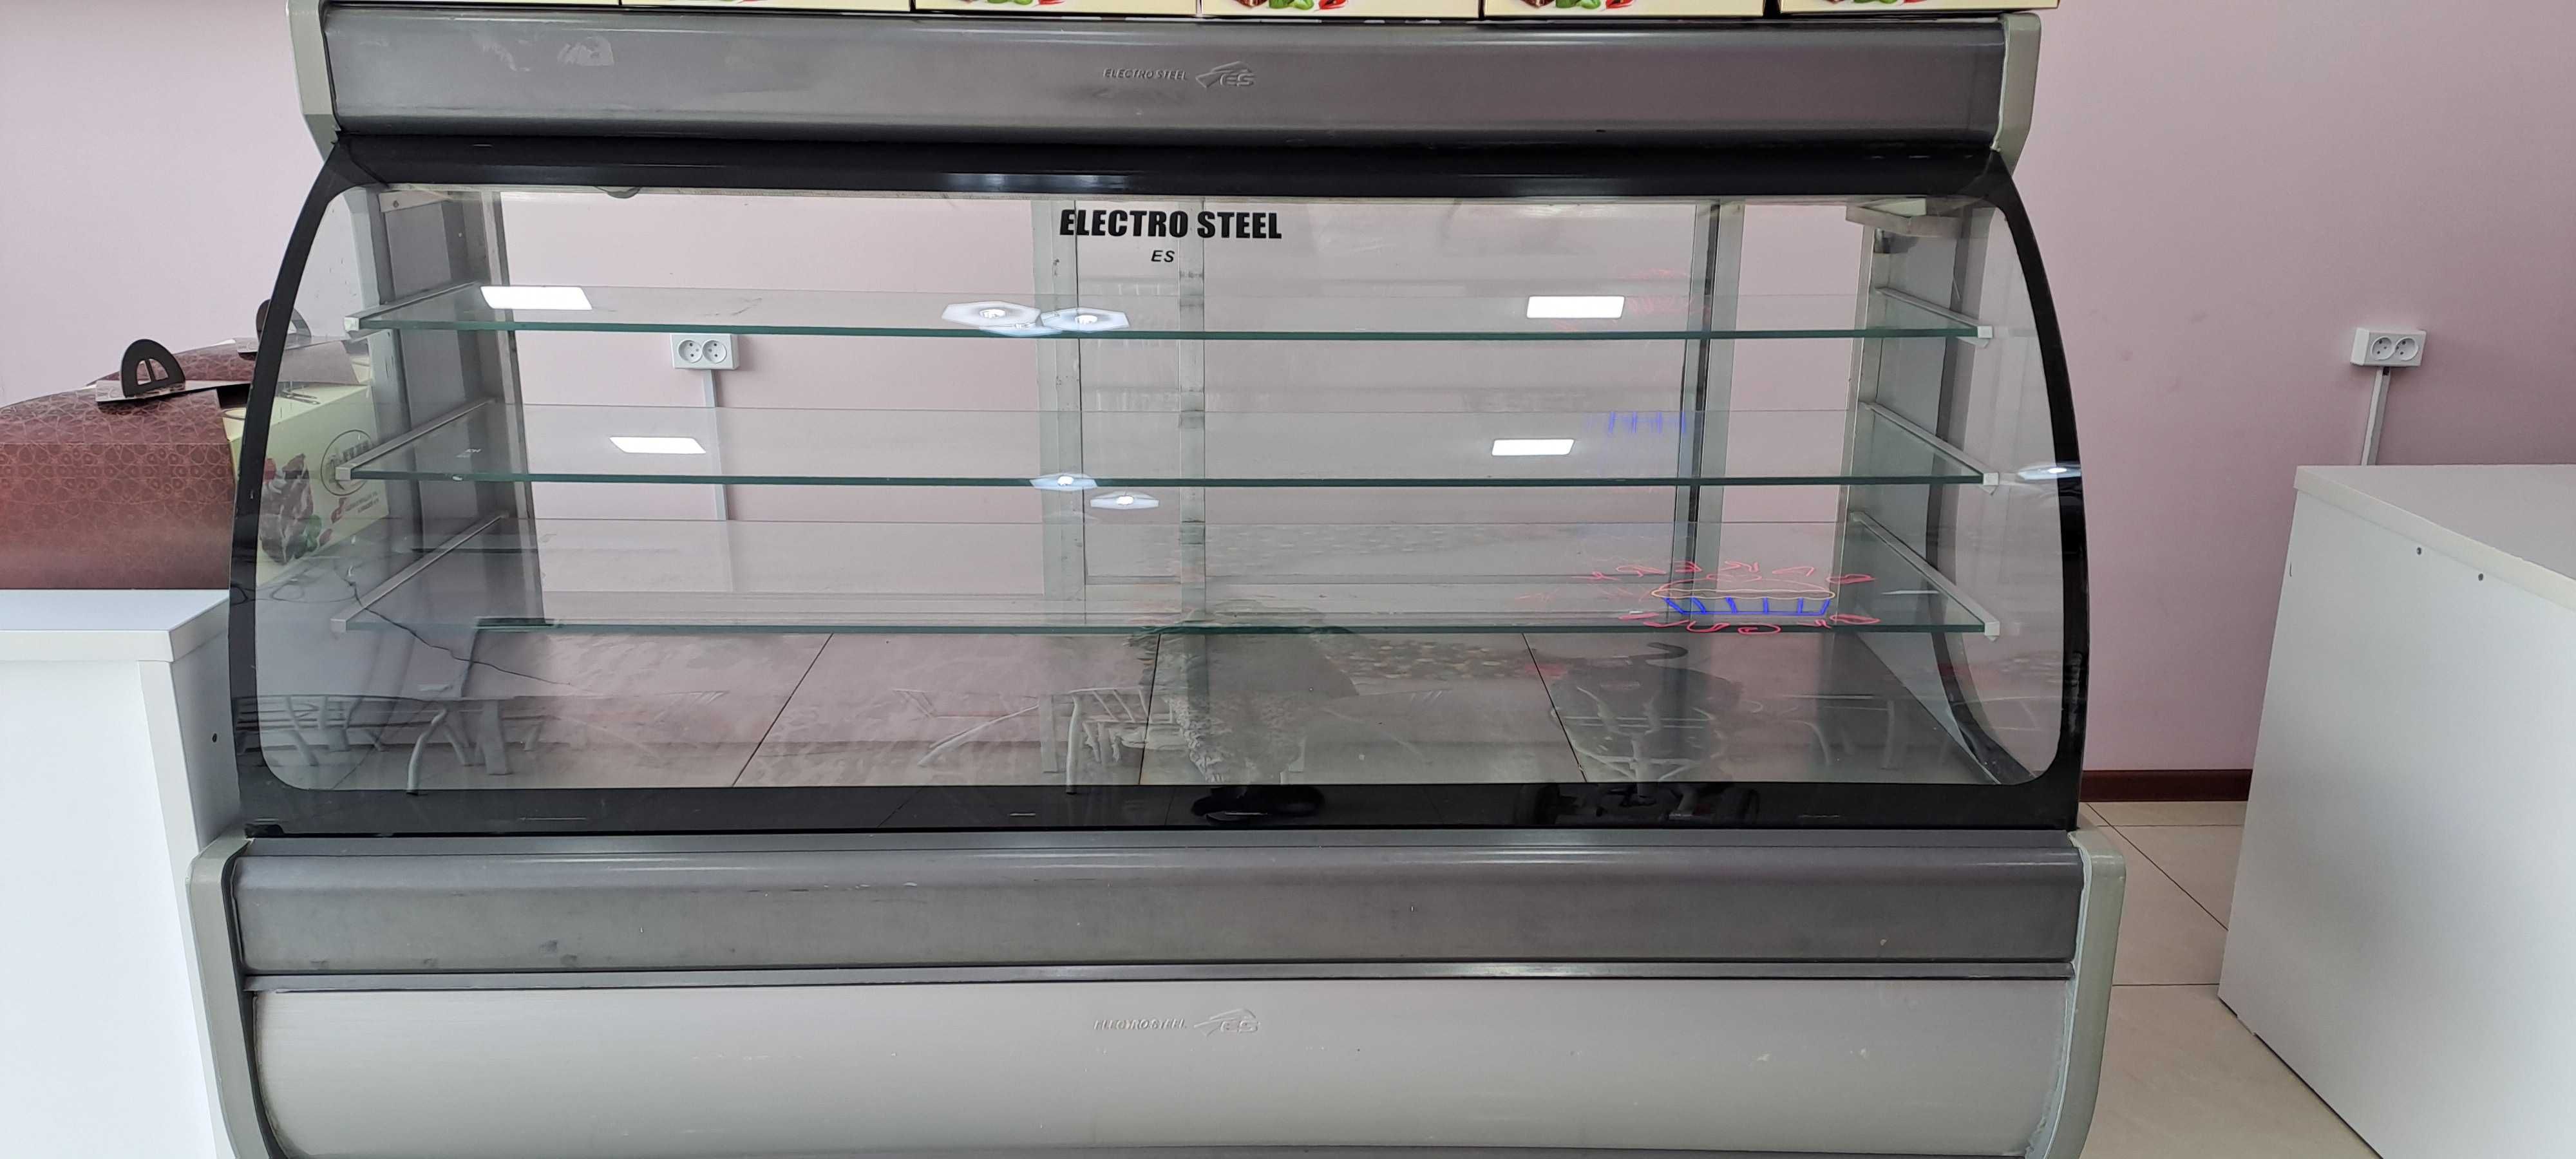 Холодильник Electrosteell продаётся